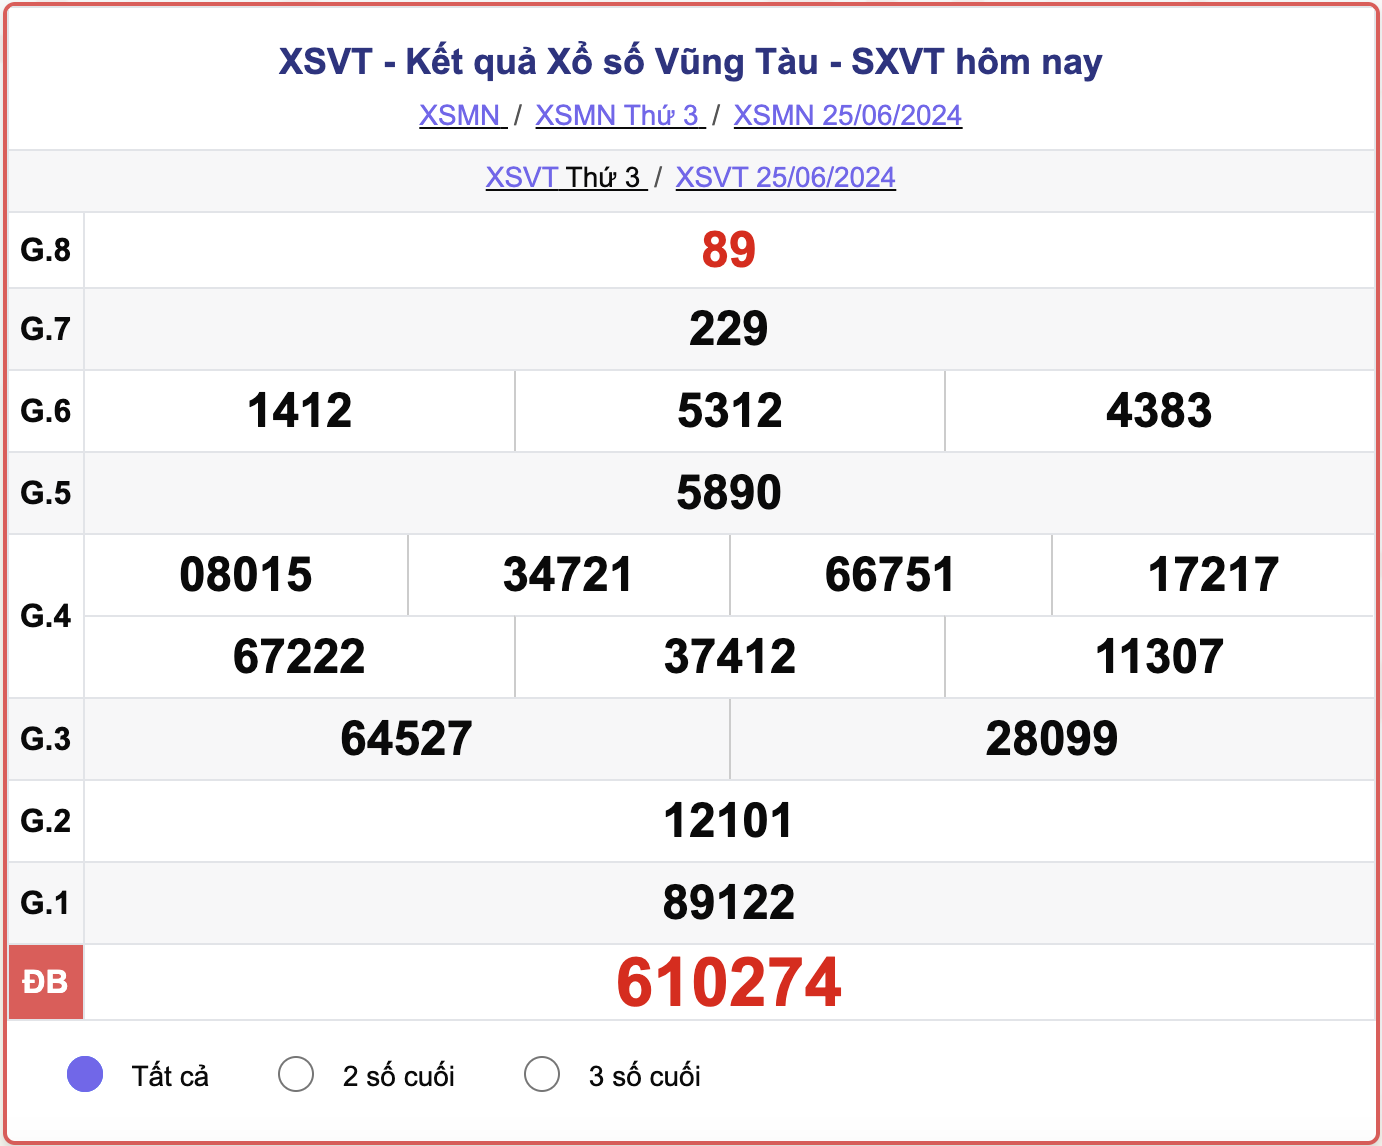 XSVT 25/6, kết quả xổ số Vũng Tàu hôm nay 25/6/2024.